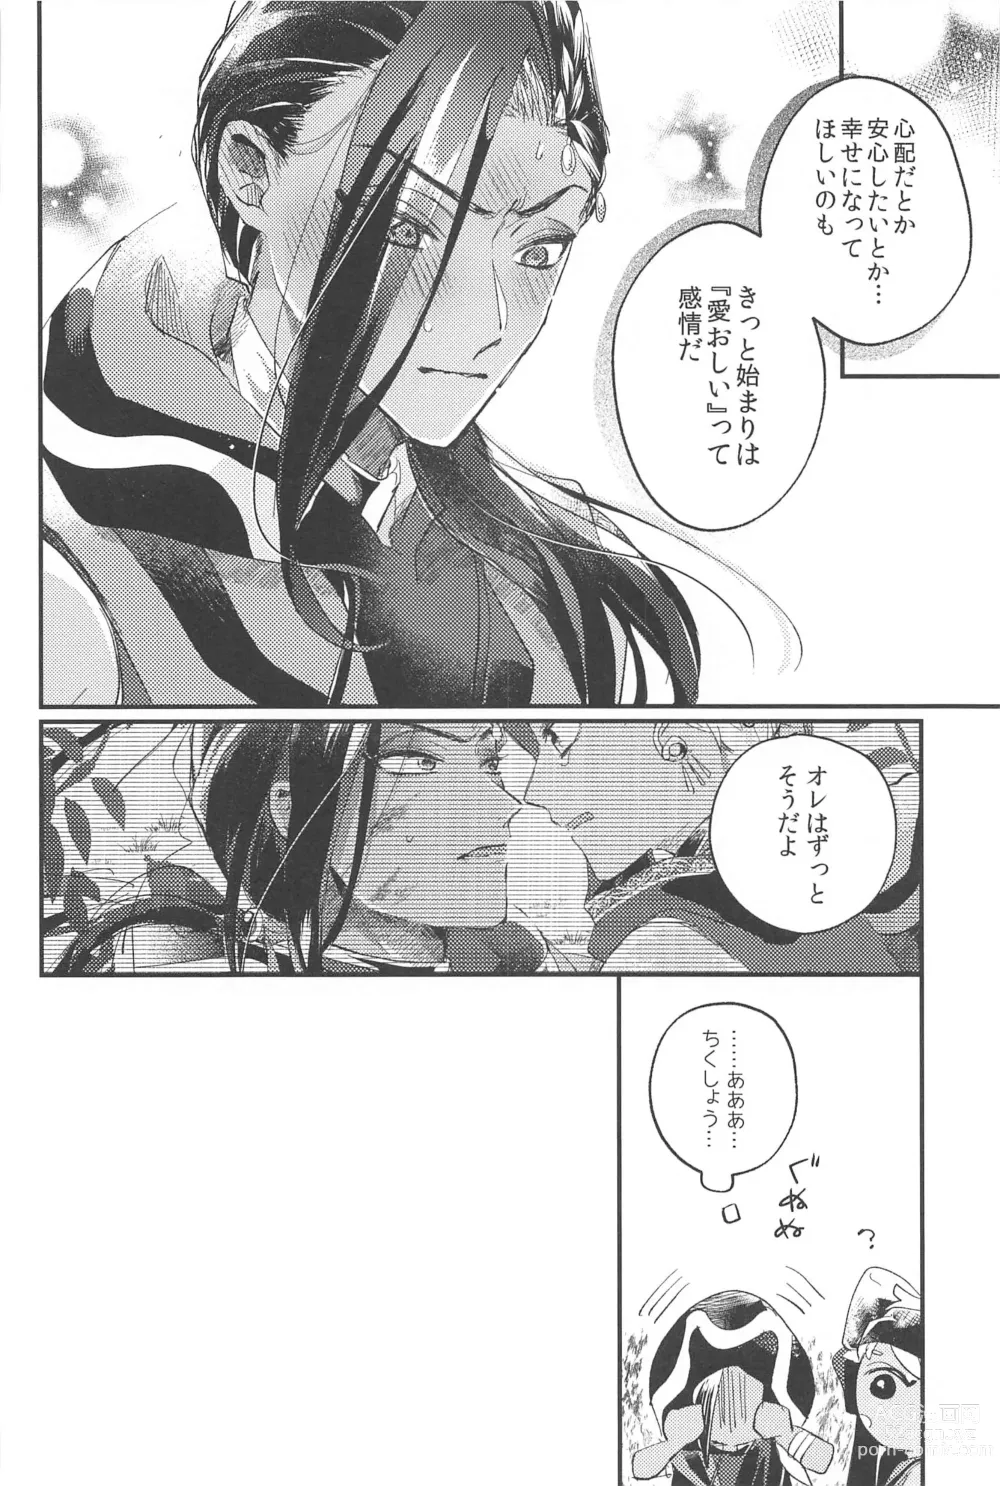 Page 48 of doujinshi Kantan dakara Muzukashii